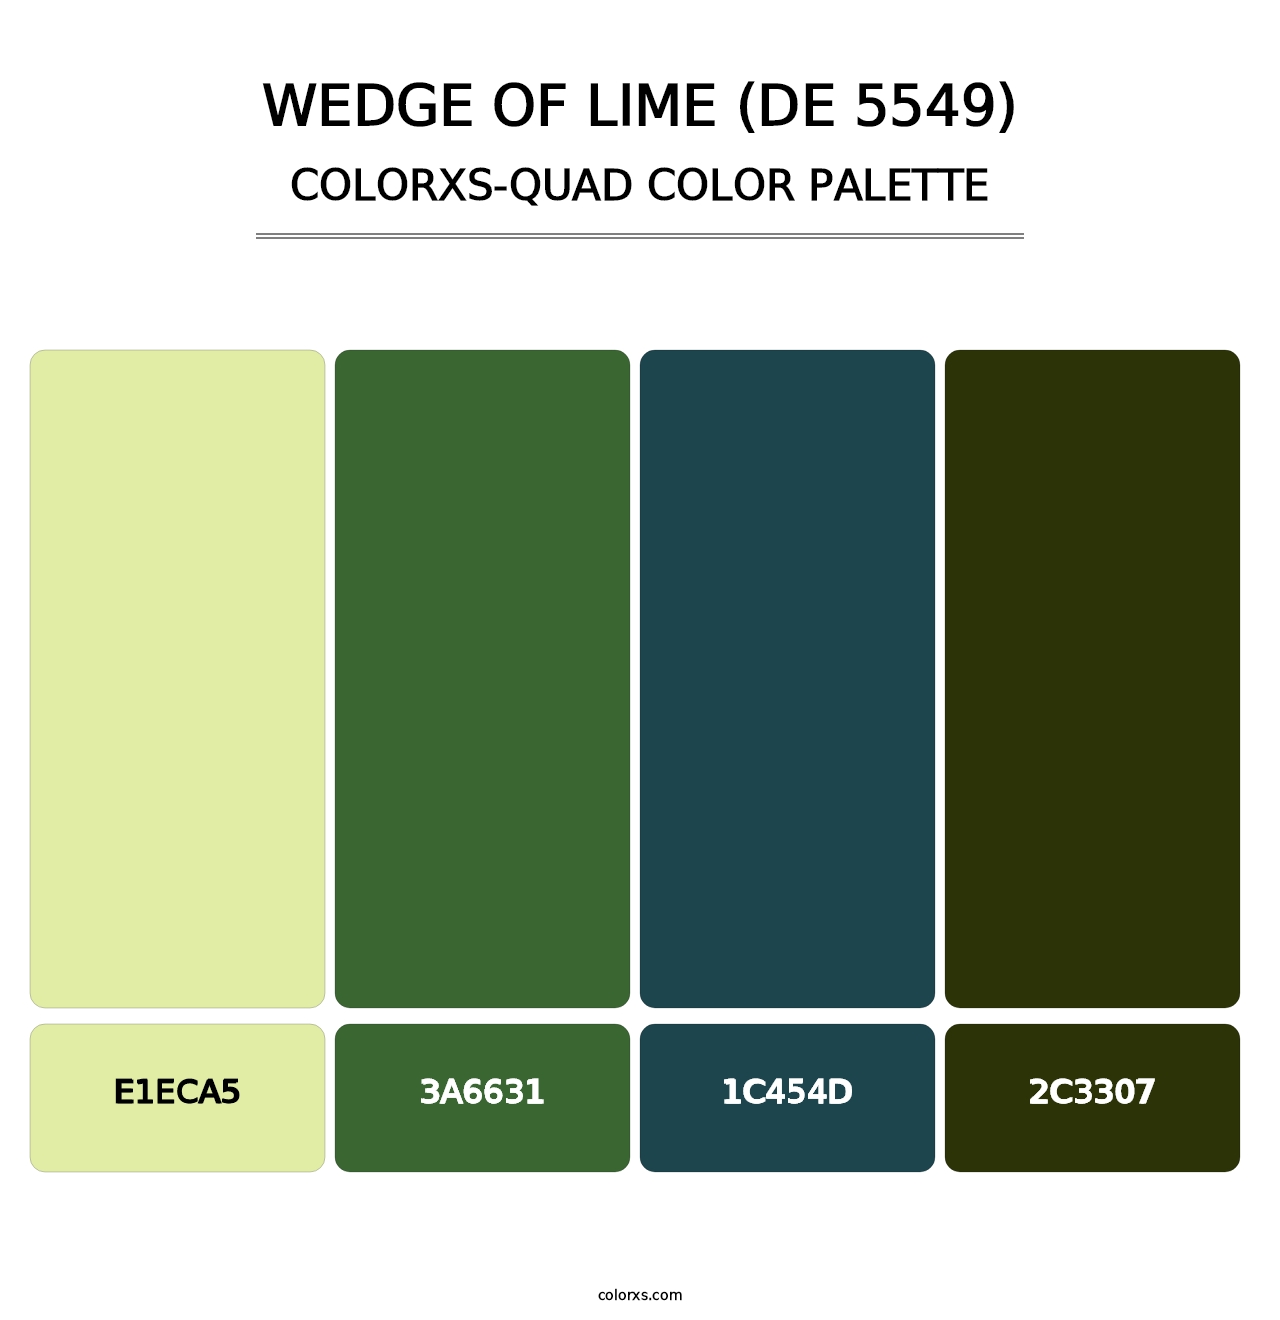 Wedge of Lime (DE 5549) - Colorxs Quad Palette